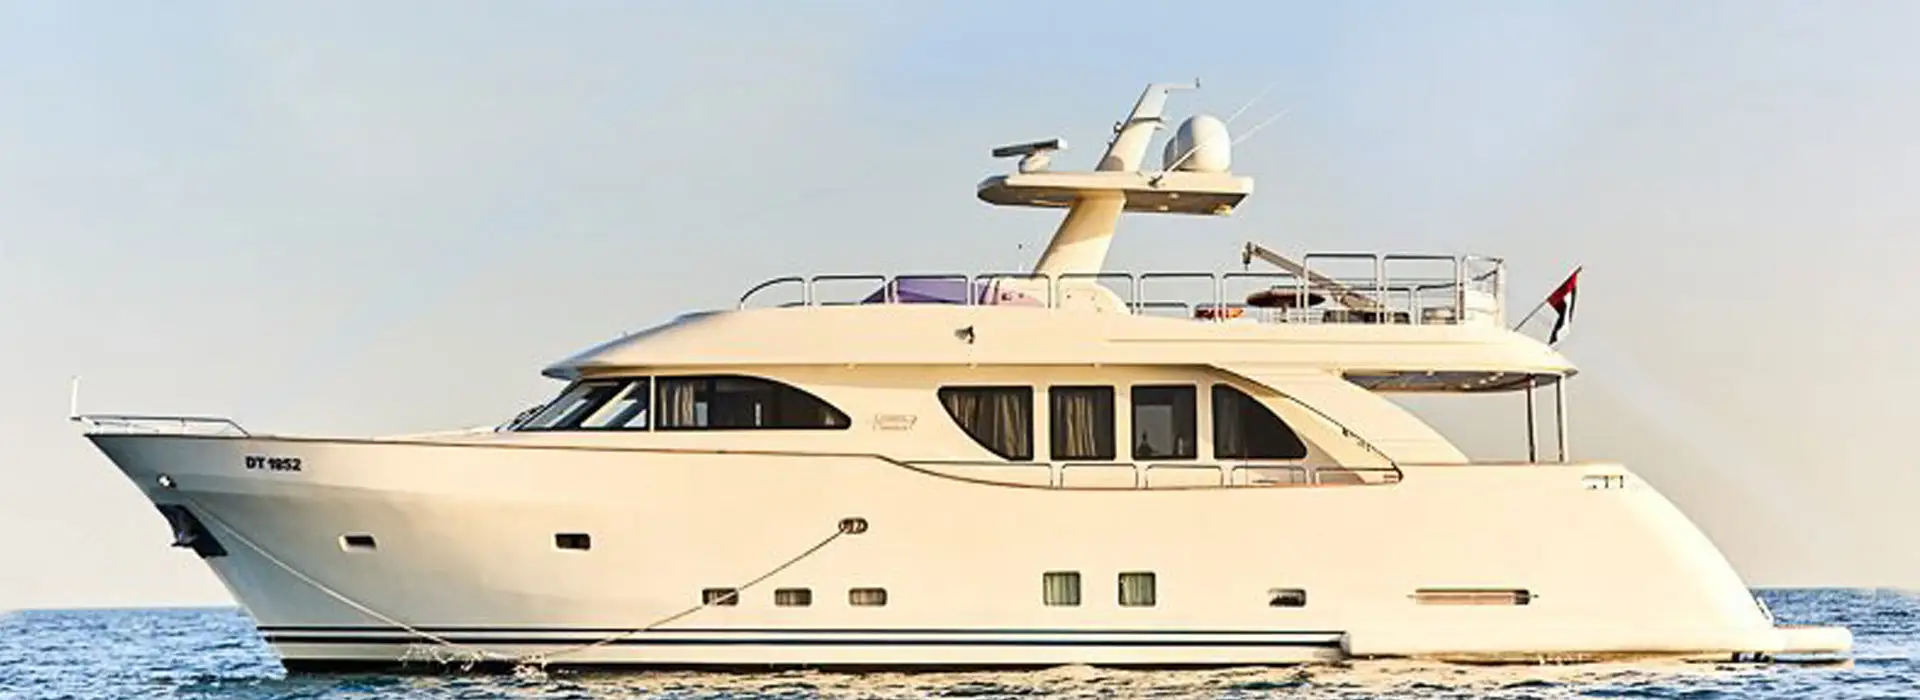 seahawk yacht charter dubai